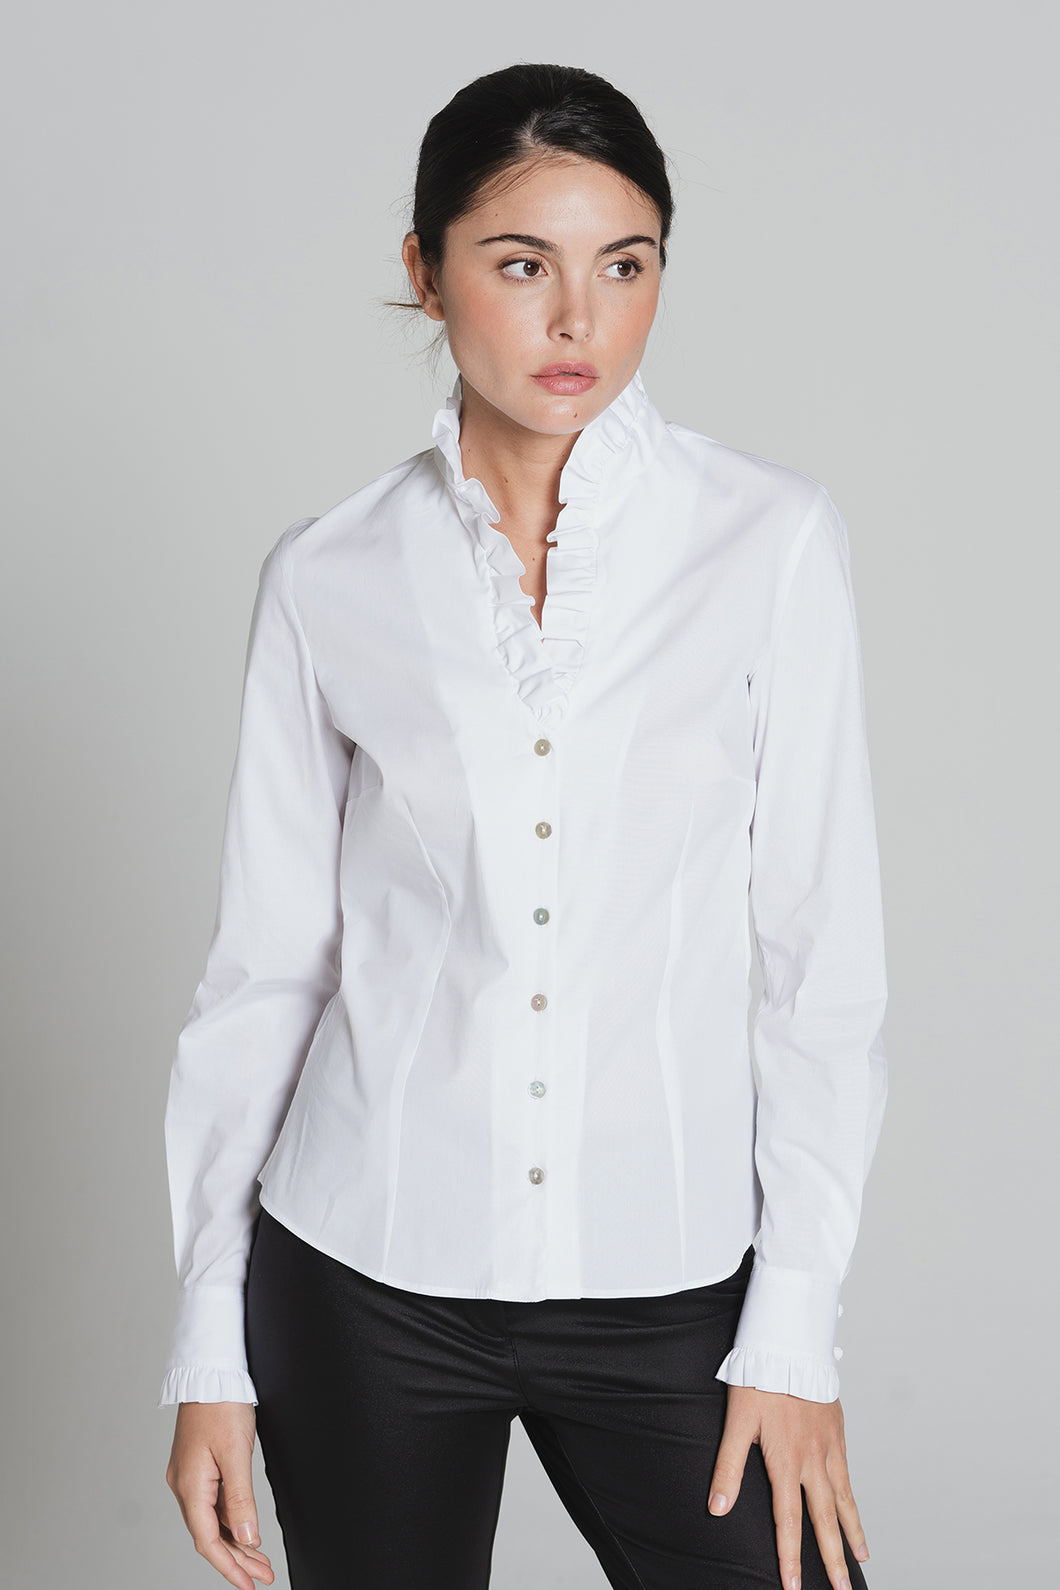 Bariloche - Lucar - Long Sleeved frilly neck shirt - White